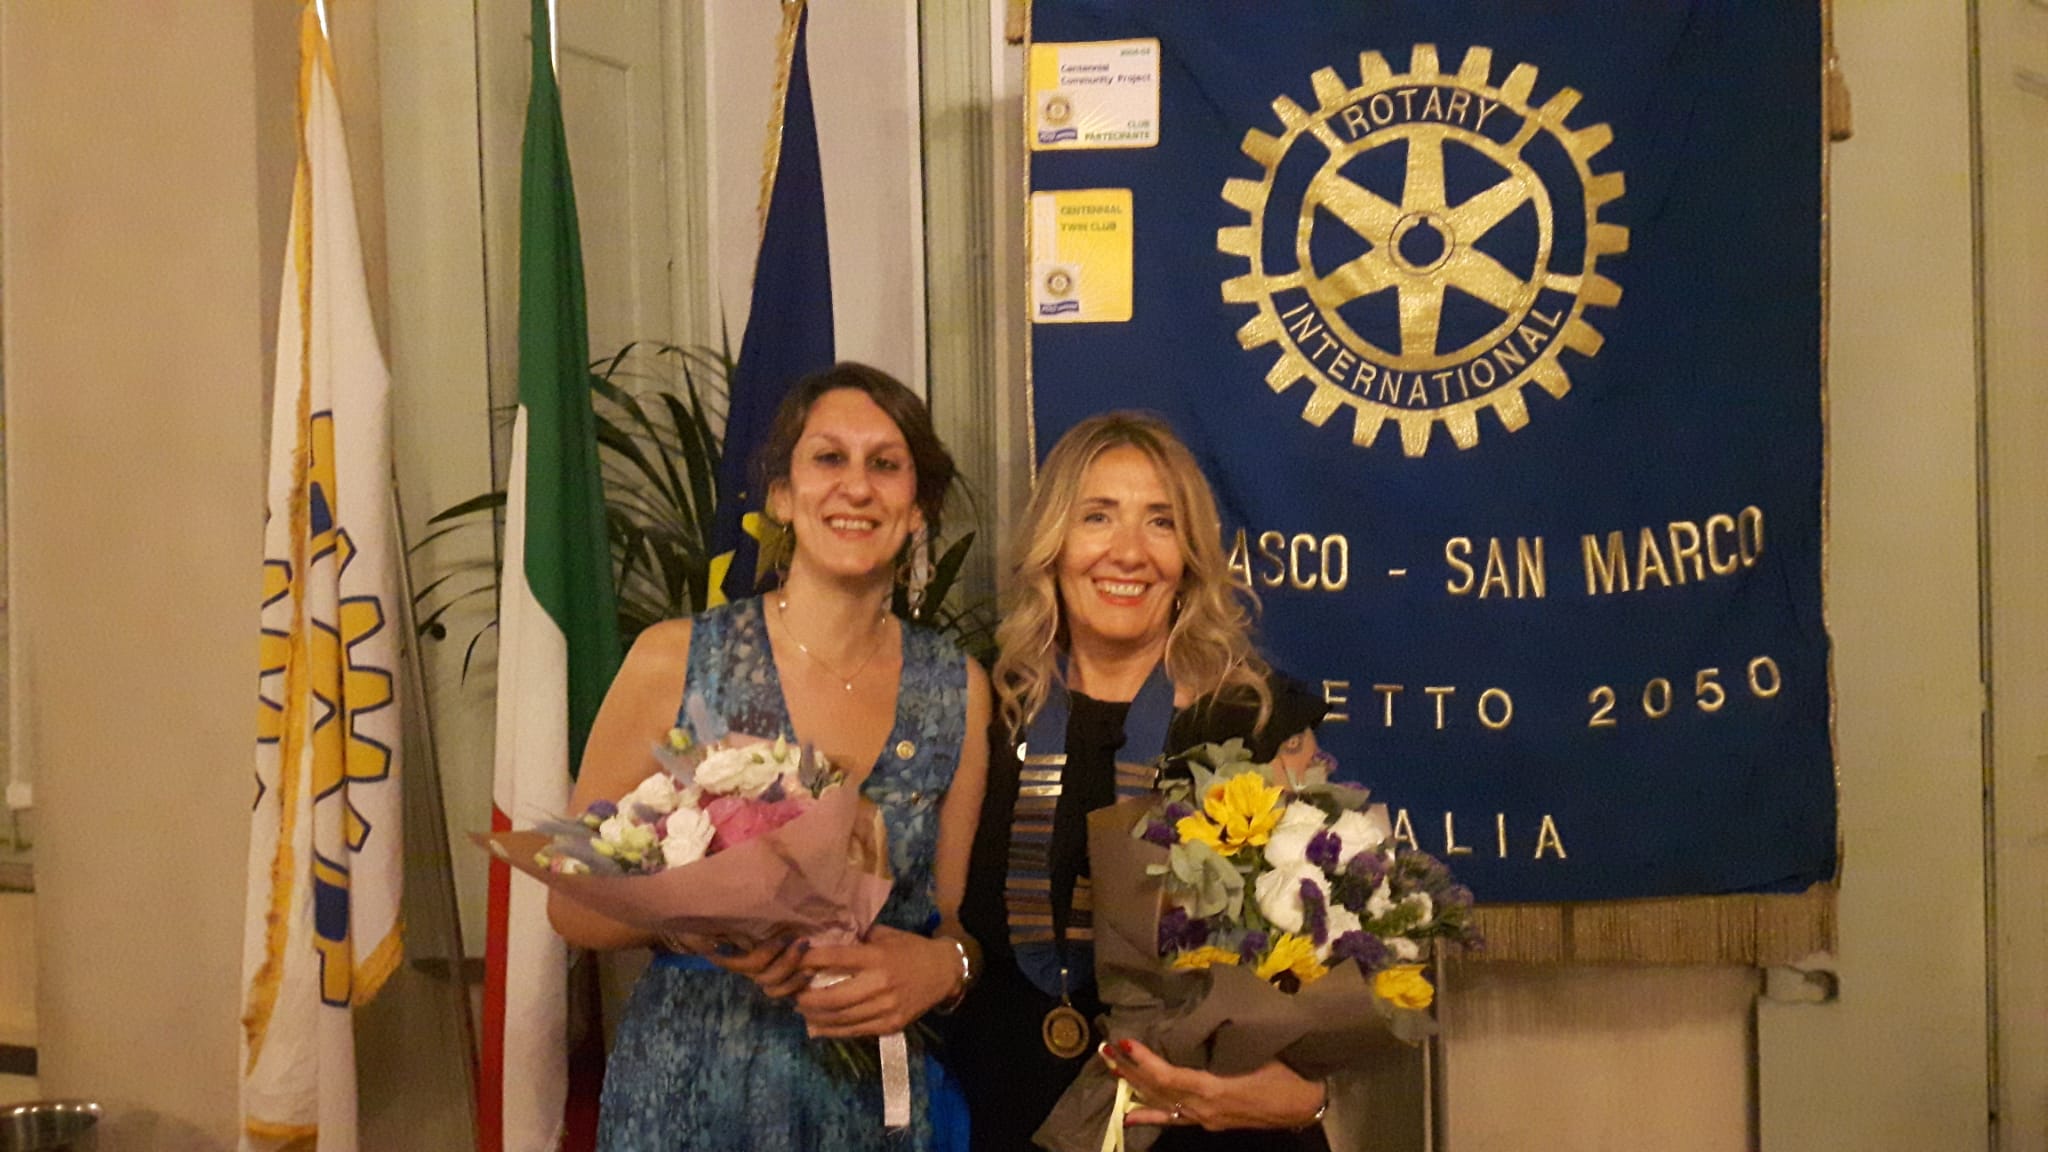 Passaggio del Martelletto al Rotary Cremasco San Marco: dopo un anno difficile, la presidenza a Laura Franceschini